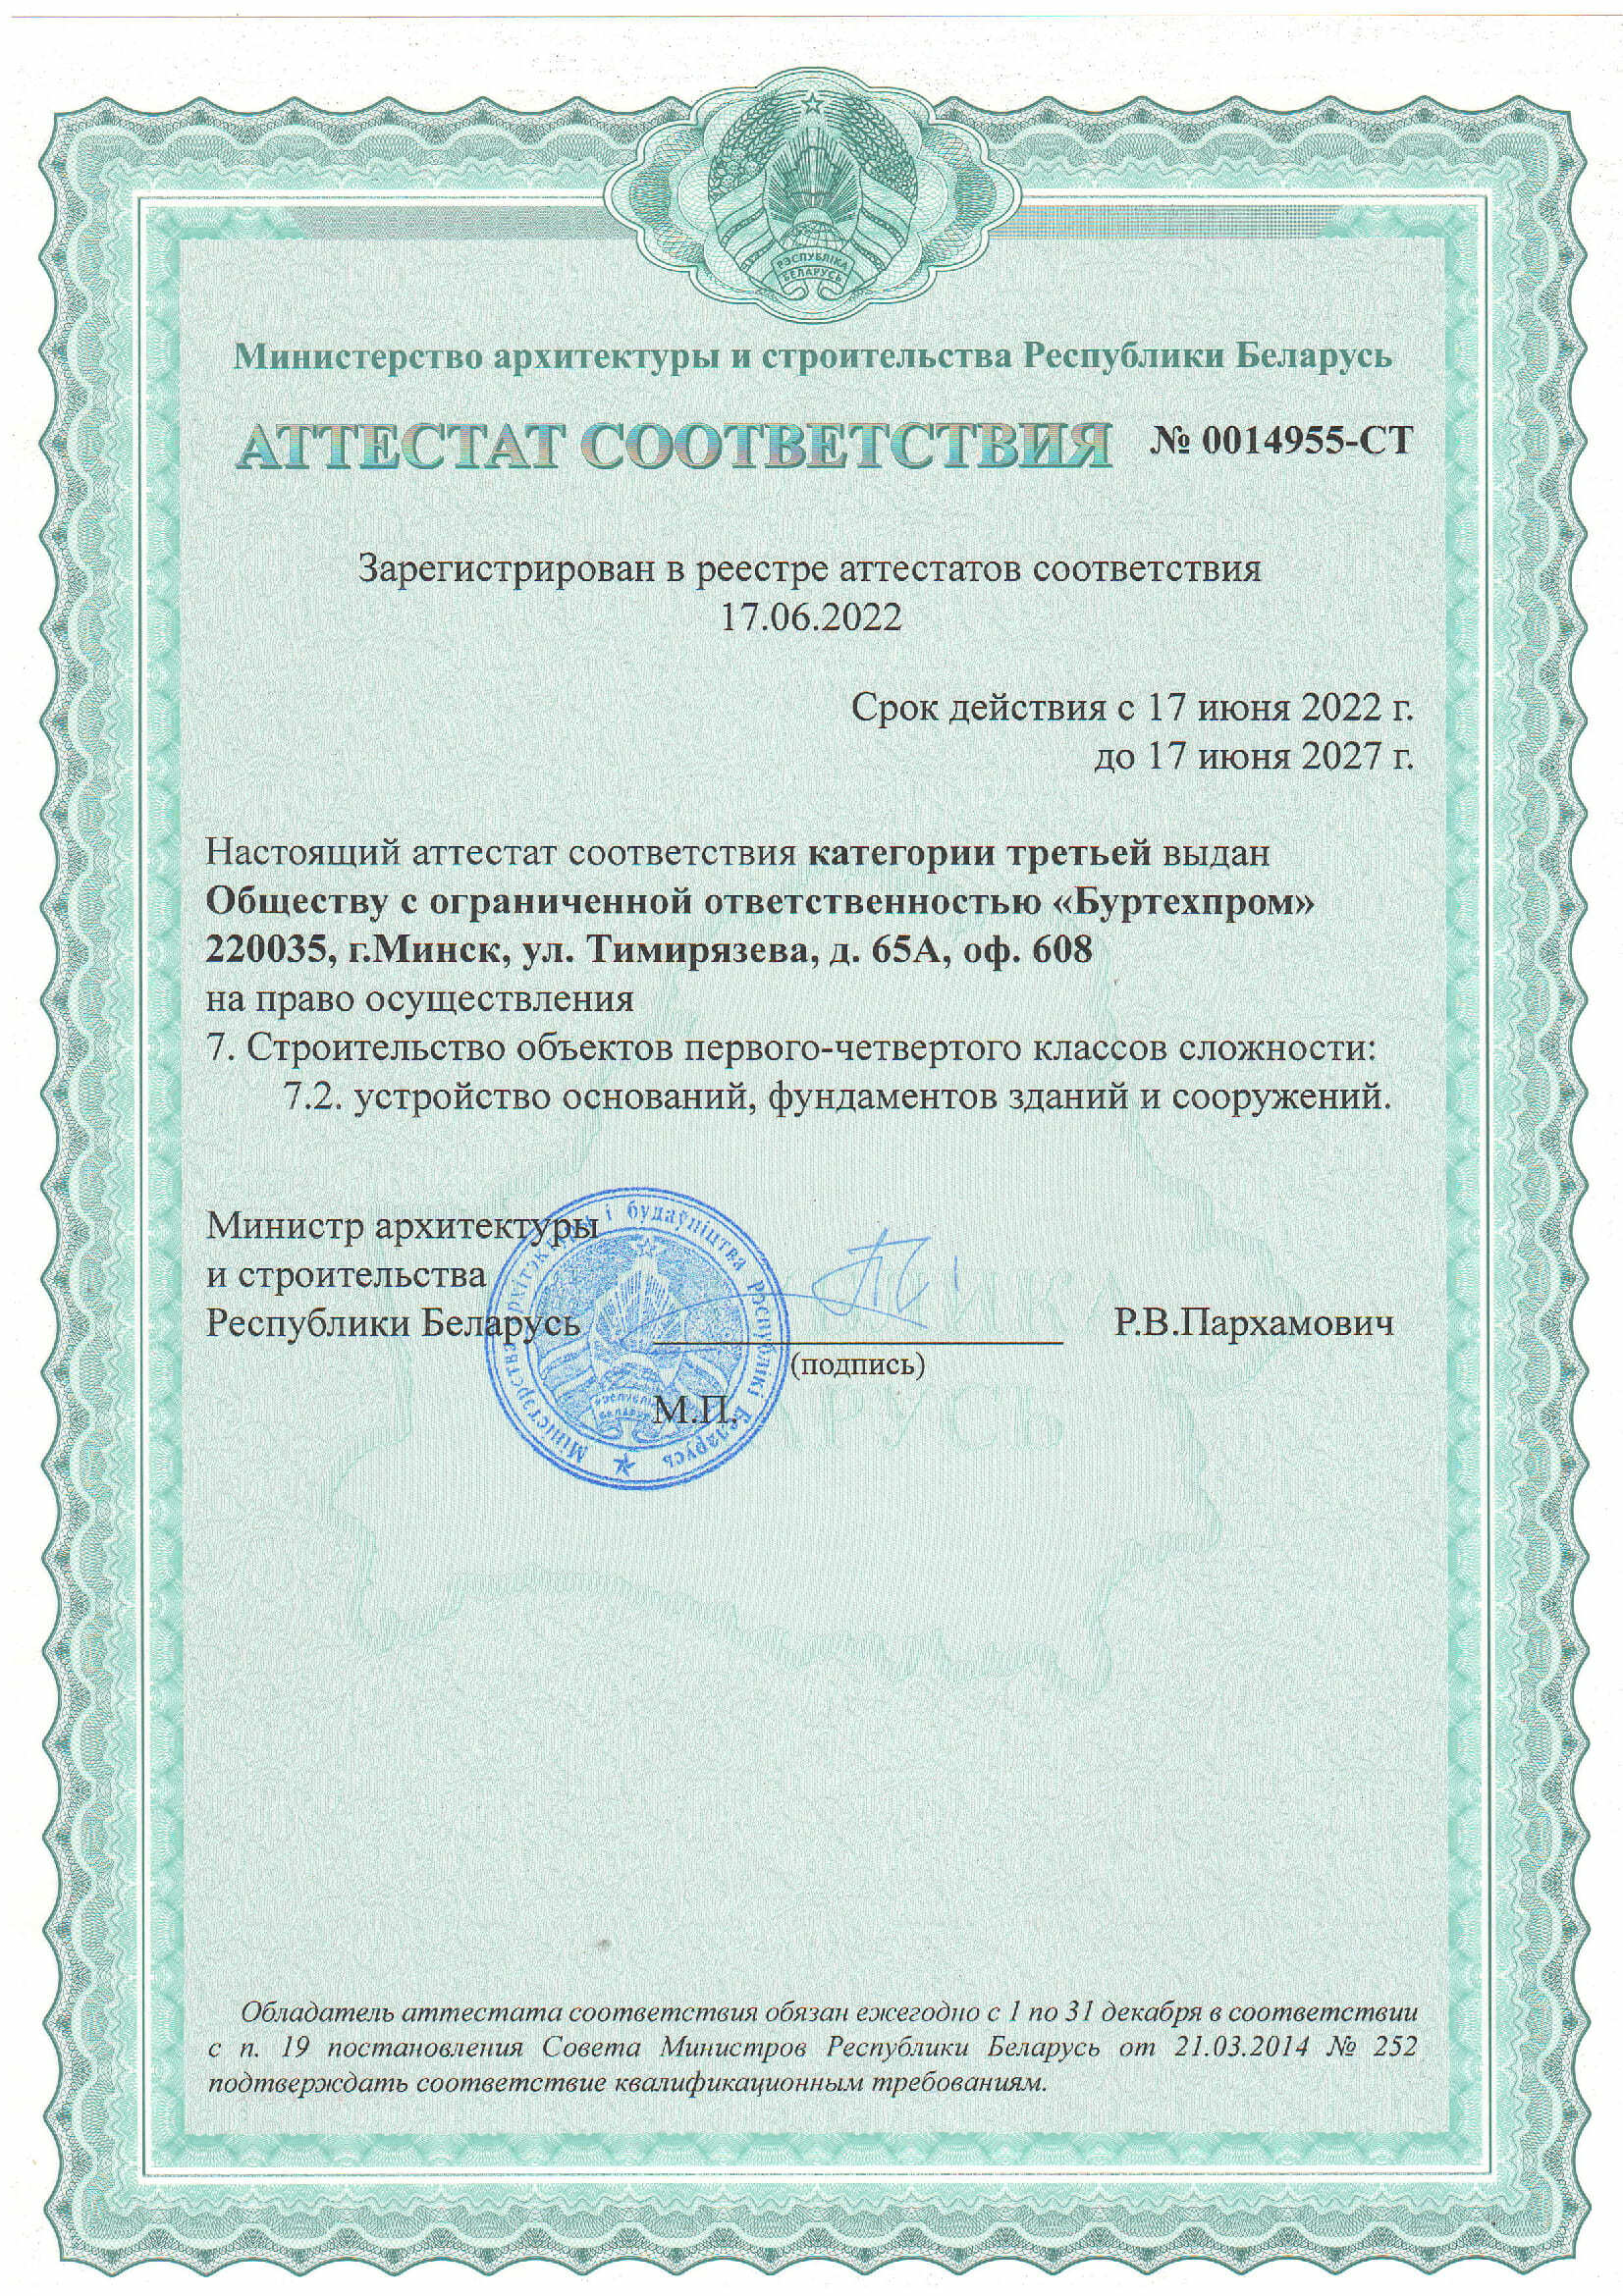 Аттестат соответствия категории третьей Министерства архитектуры и строительства РБ на право осуществления строительства объектов первого-четвертого классов сложности ООО Буртехпром